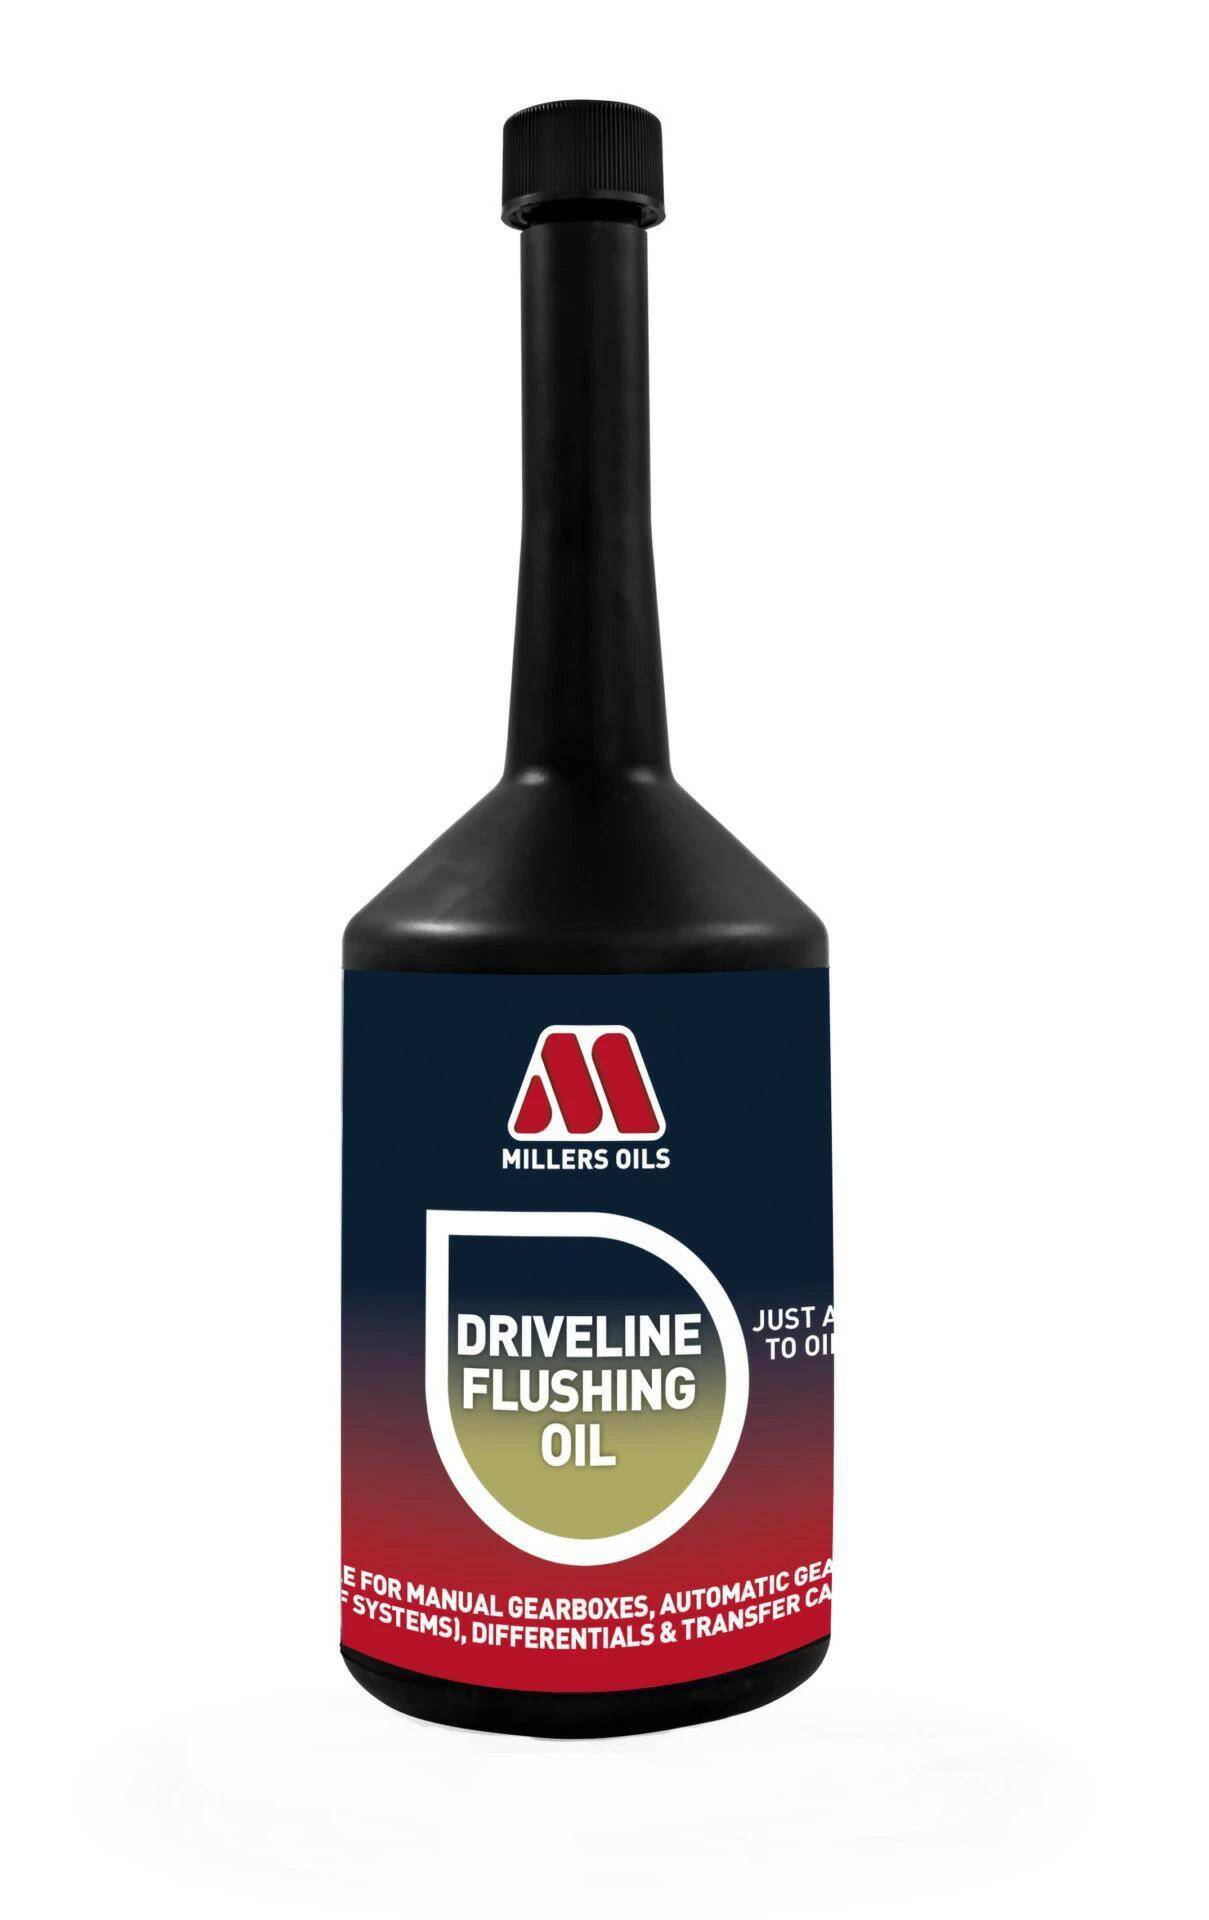 Millers Oils Driveline Flushing Oil